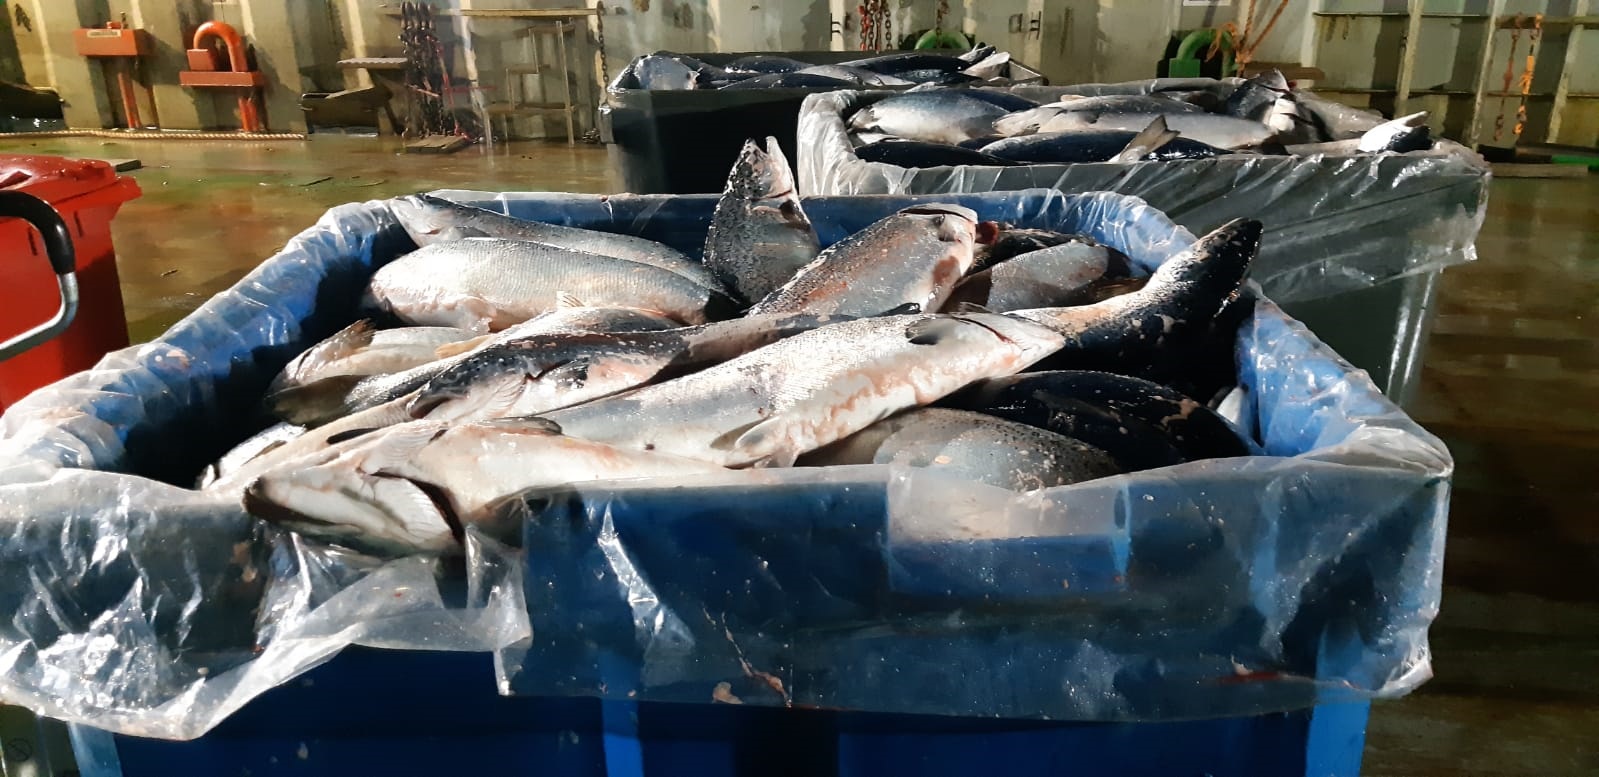 Anuncian acciones legales por derrame de agua y pérdida de peces en Punta Arenas